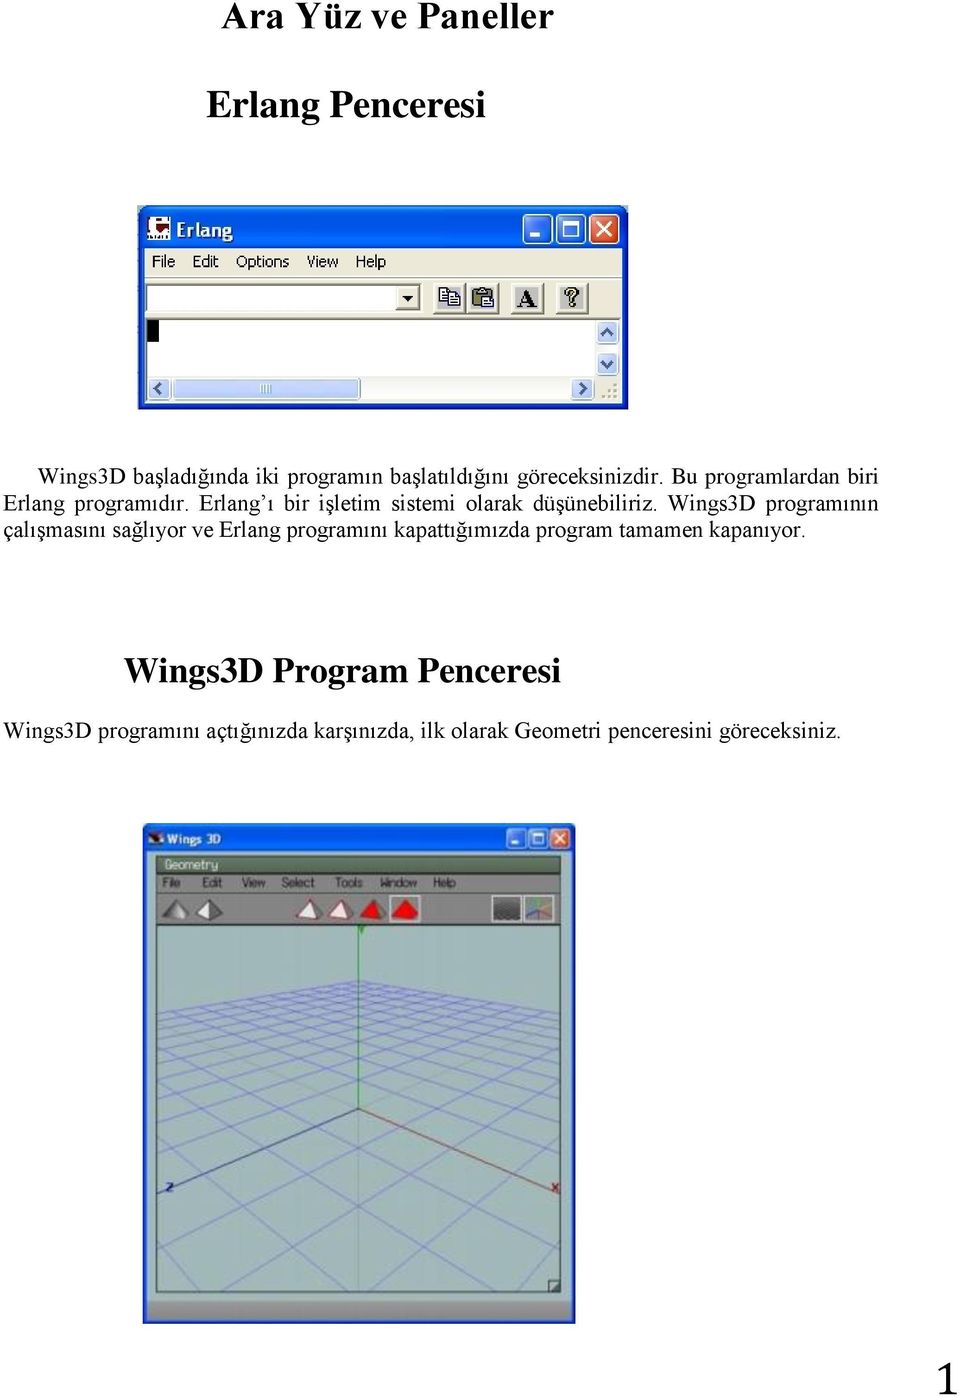 Wings3D programının çalışmasını sağlıyor ve Erlang programını kapattığımızda program tamamen kapanıyor.